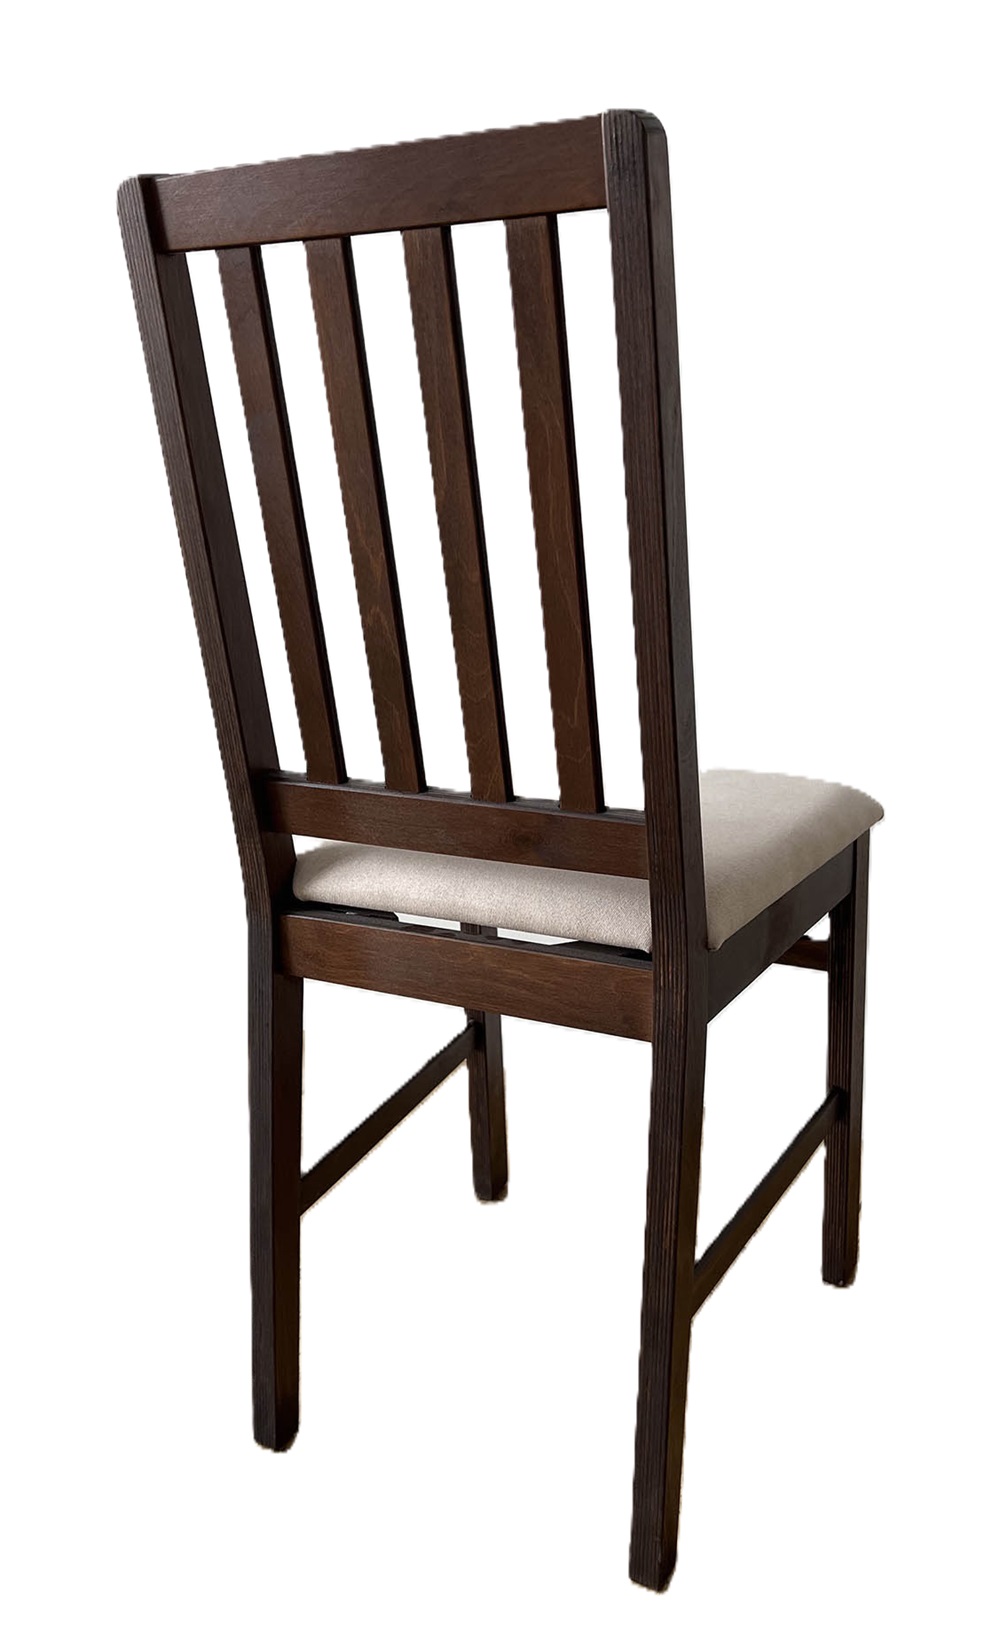 Деревянный стул со спинкой. Обивка из микровелюра. Цвет орех/бежевый.